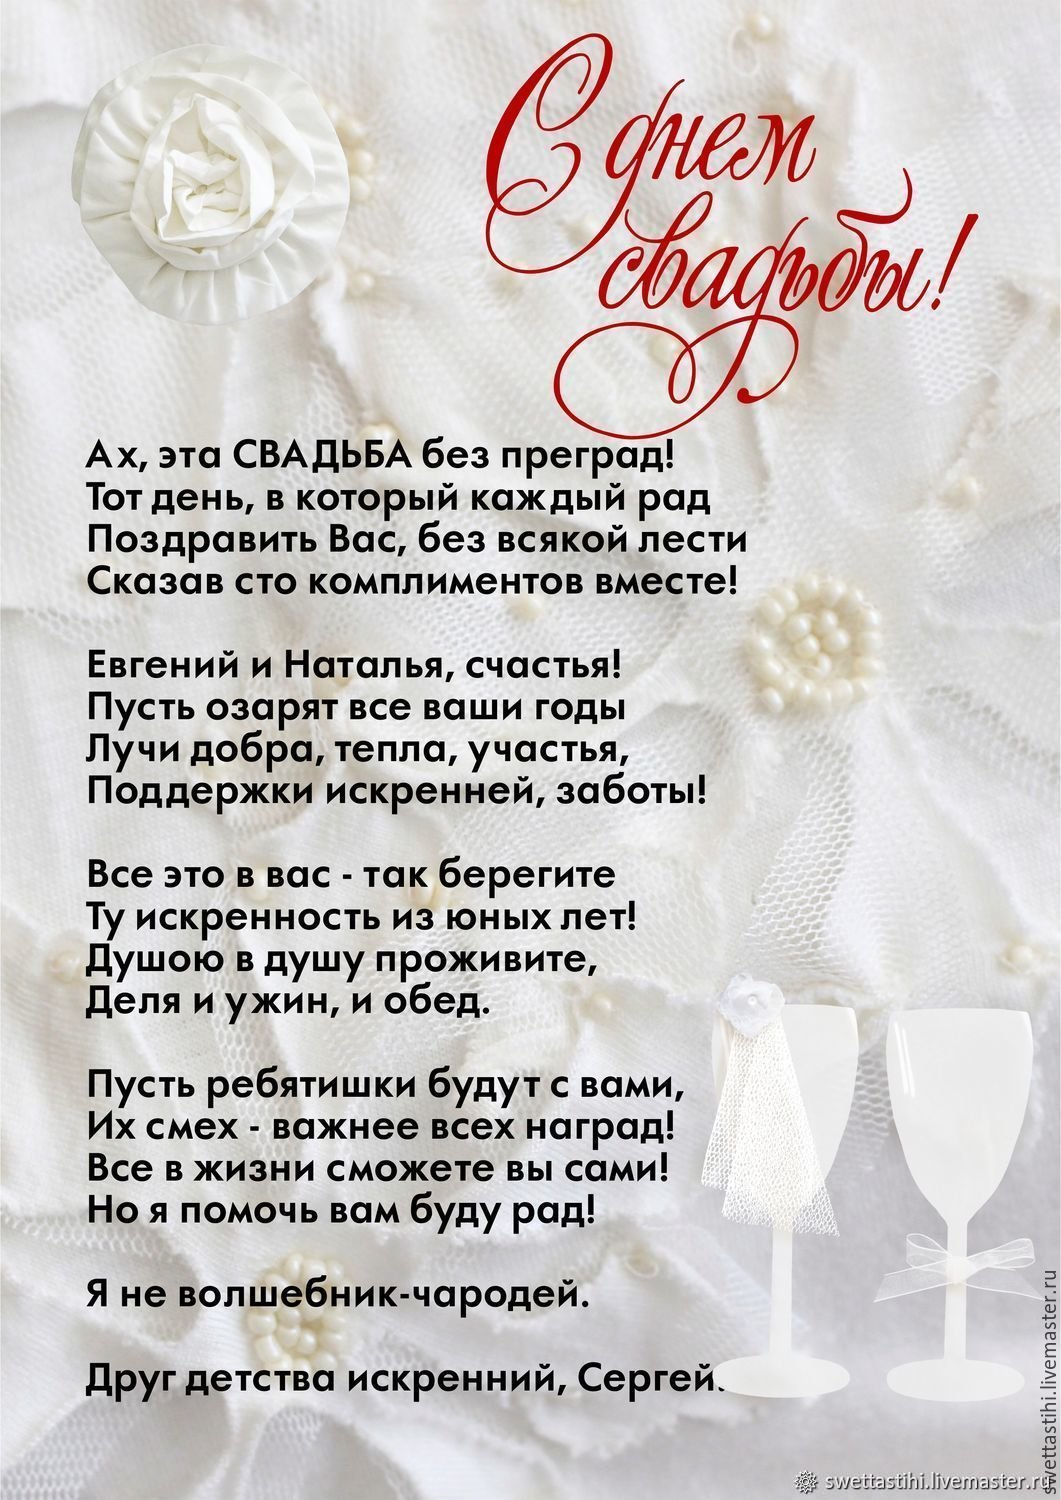 Поздравления на свадьбу сестре своими словами - kormstroytorg.ru